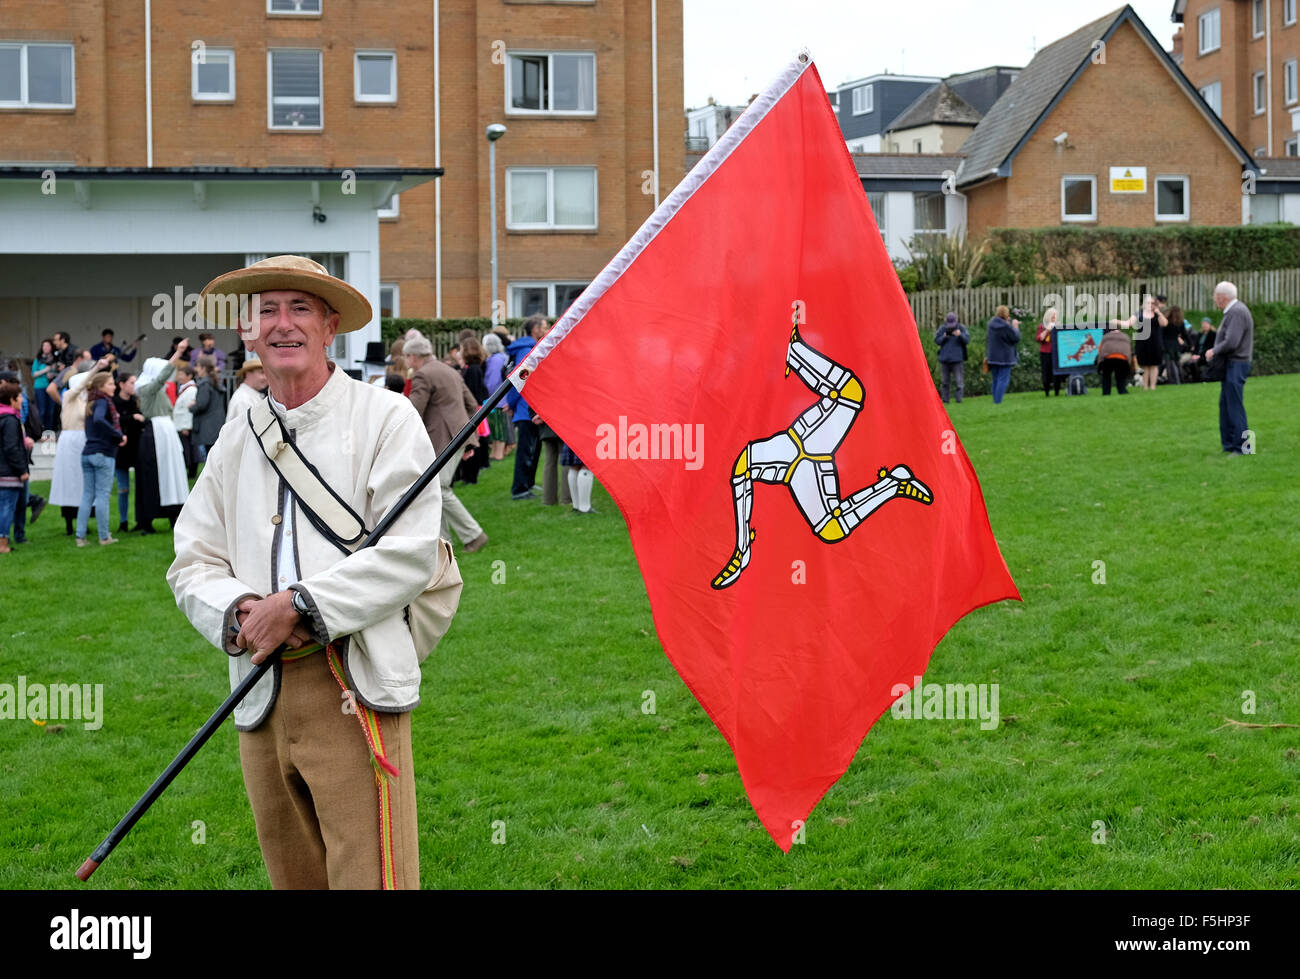 Uomo in abito tradizionale e portando la bandiera dell'Isola di Man in occasione del Festival di musica celtica svoltasi a Newquay, Cornwall, Regno Unito Foto Stock